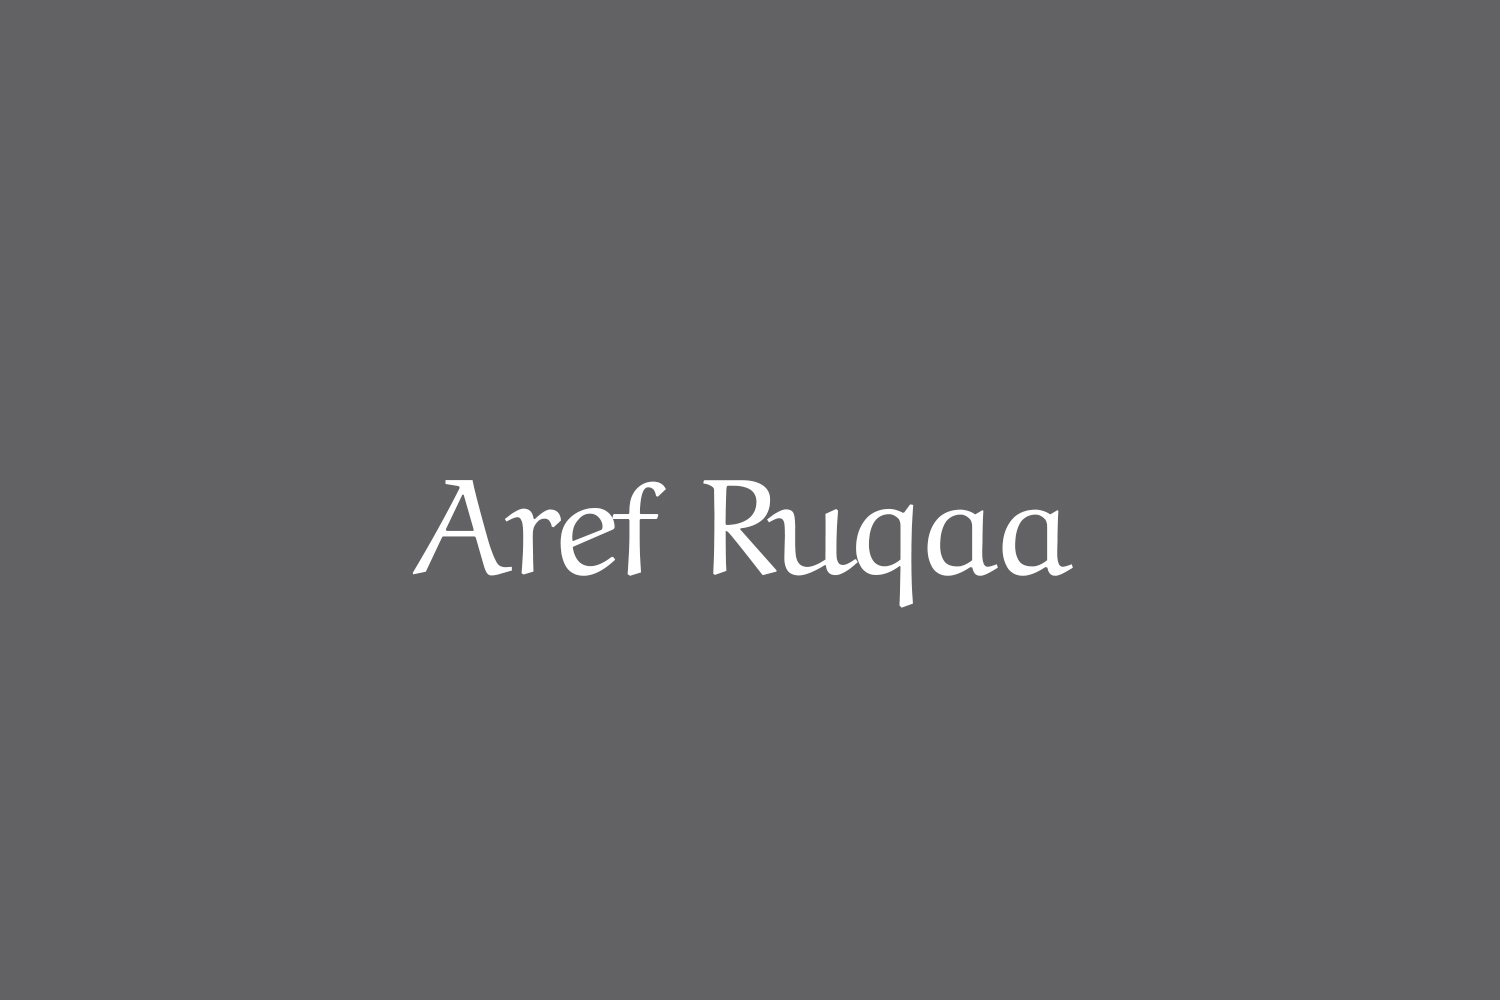 Aref Ruqaa Ink